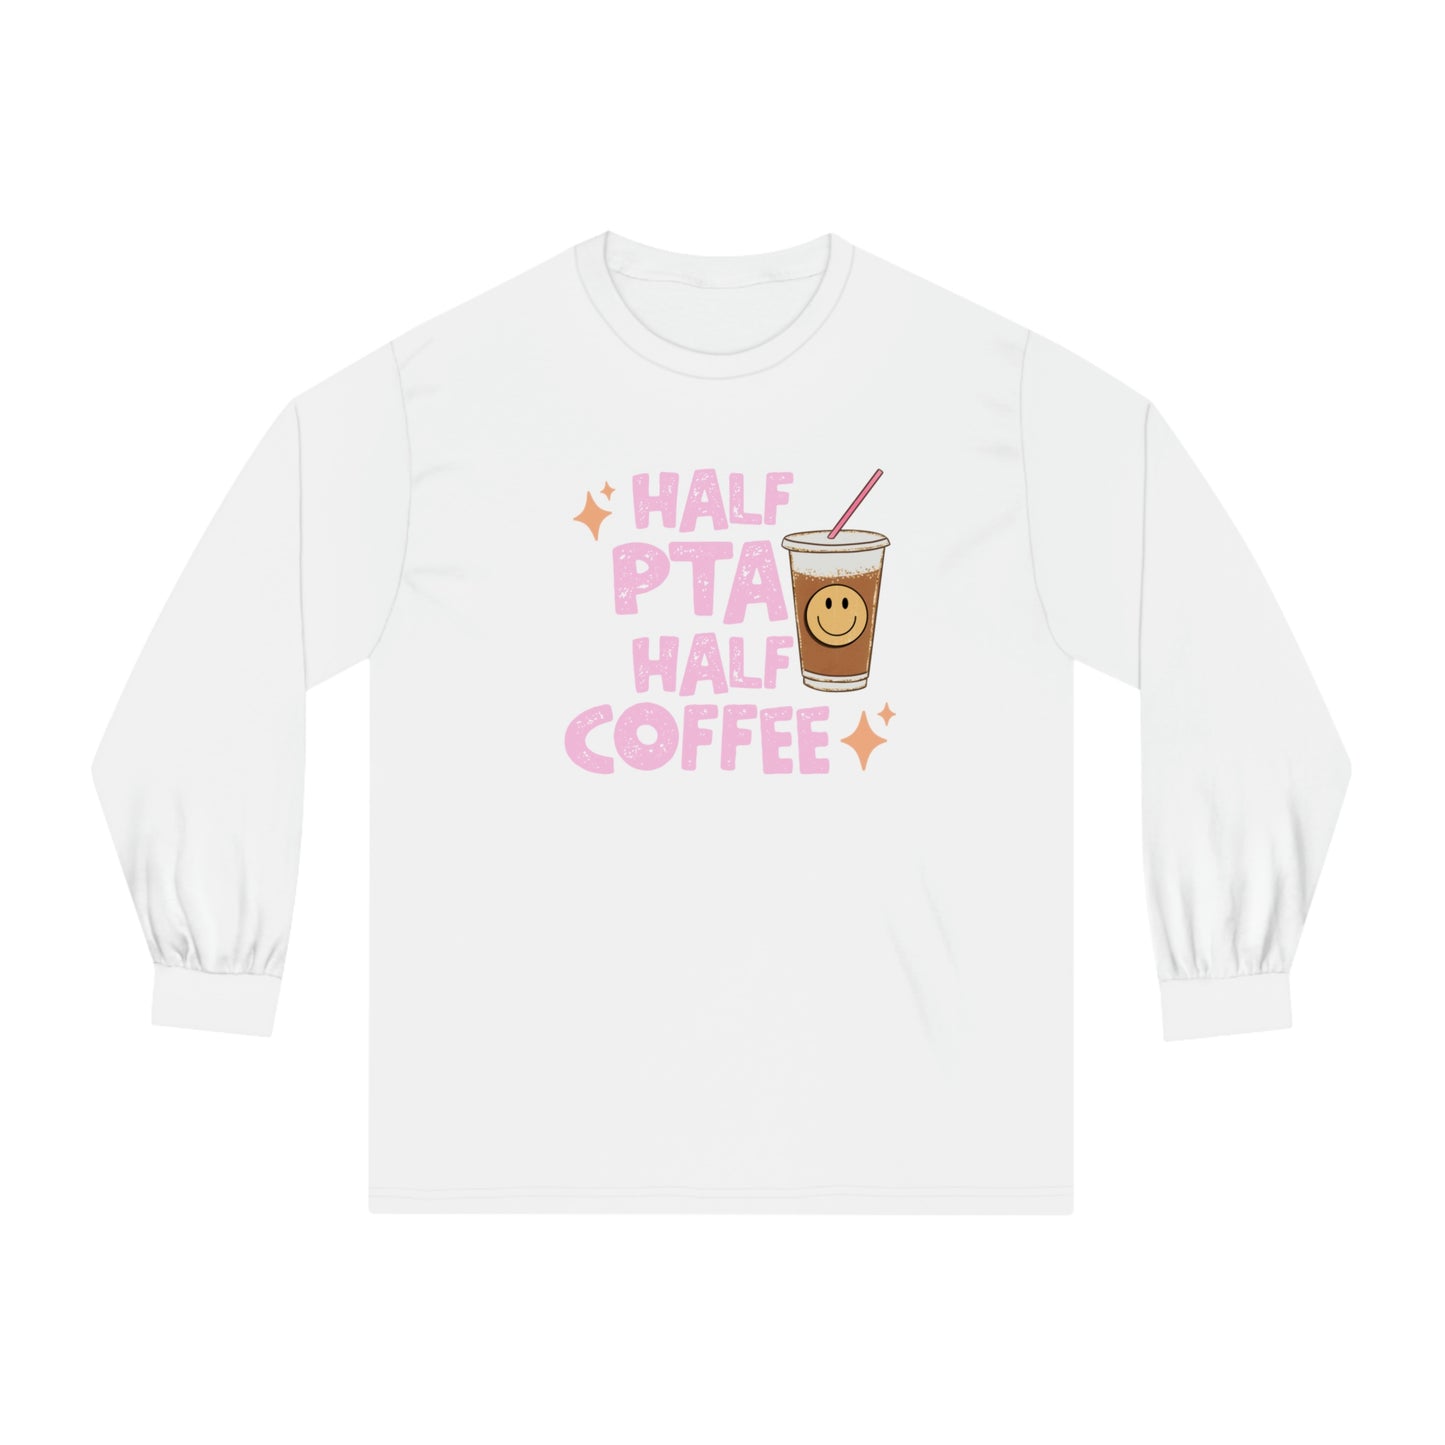 Half PTA Half Coffee Long Sleeve T-Shirt